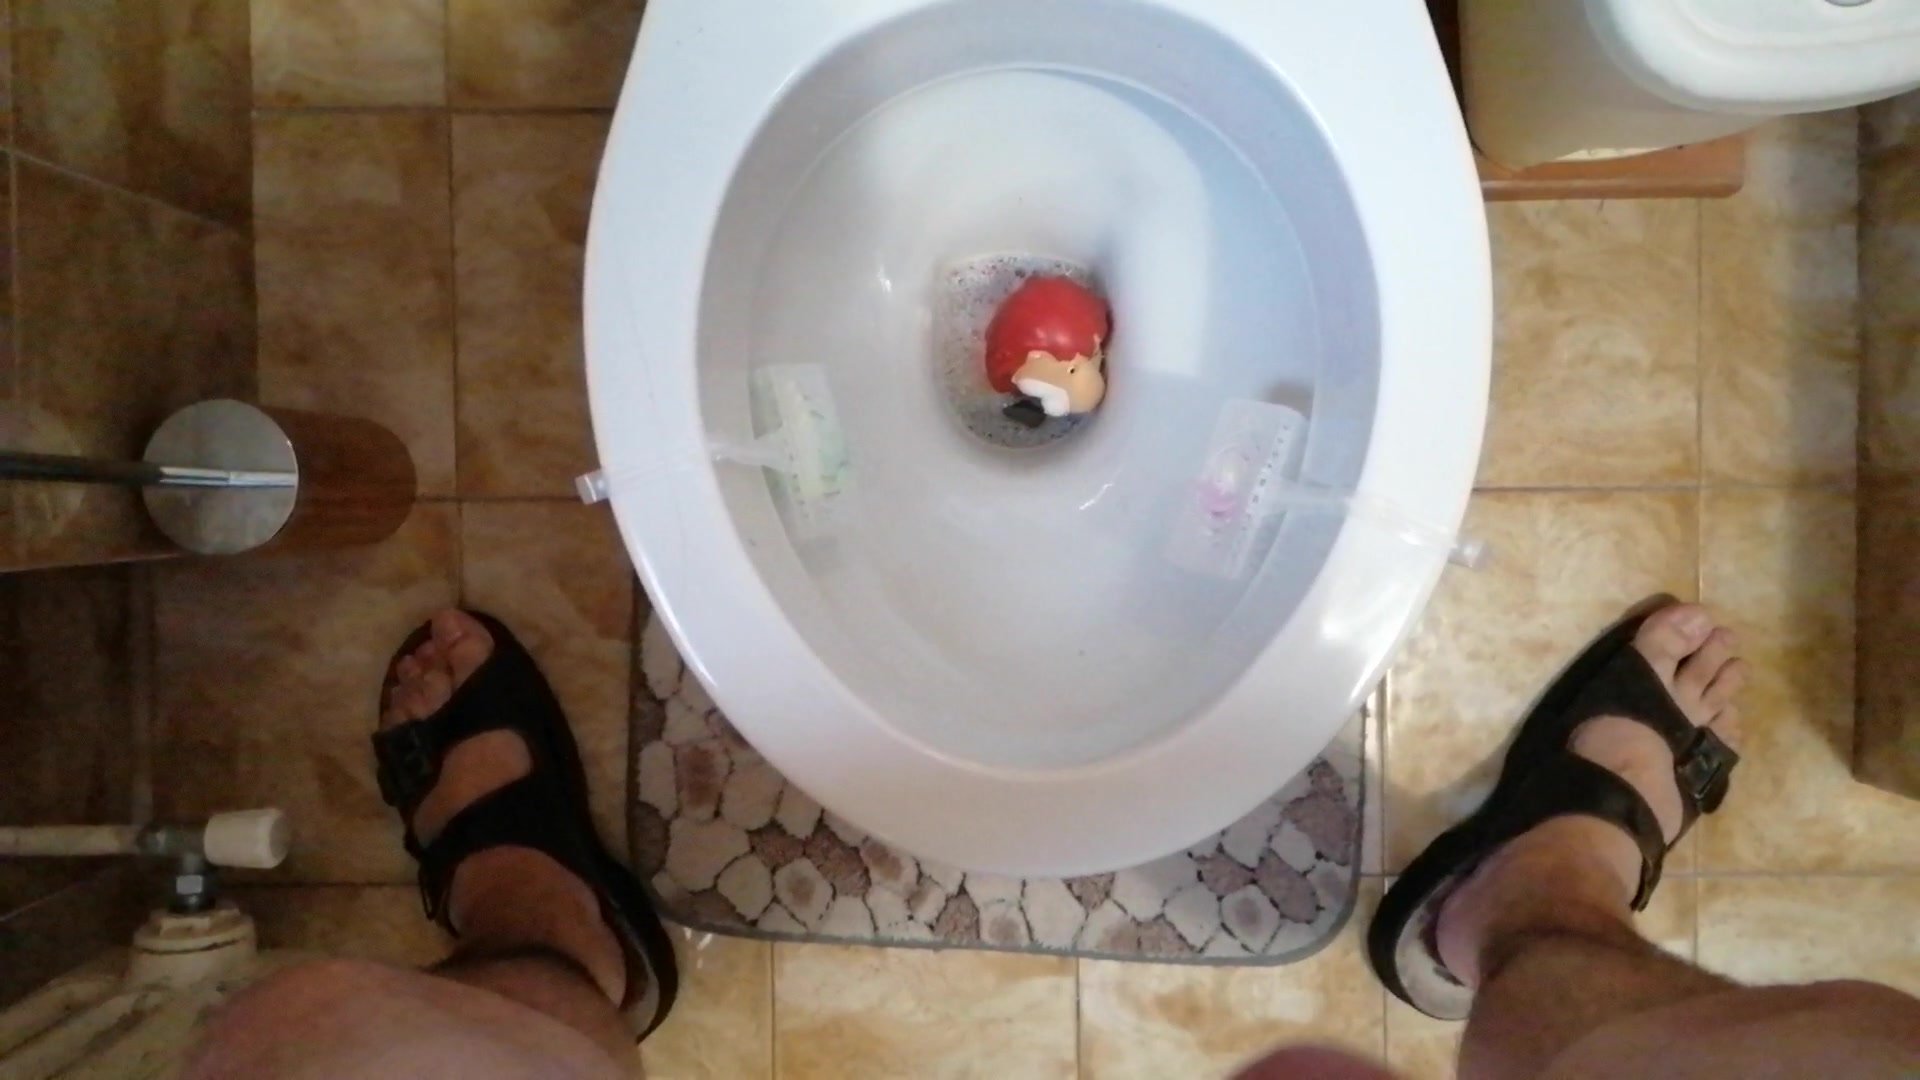 A rubber lion toy Vs toilet